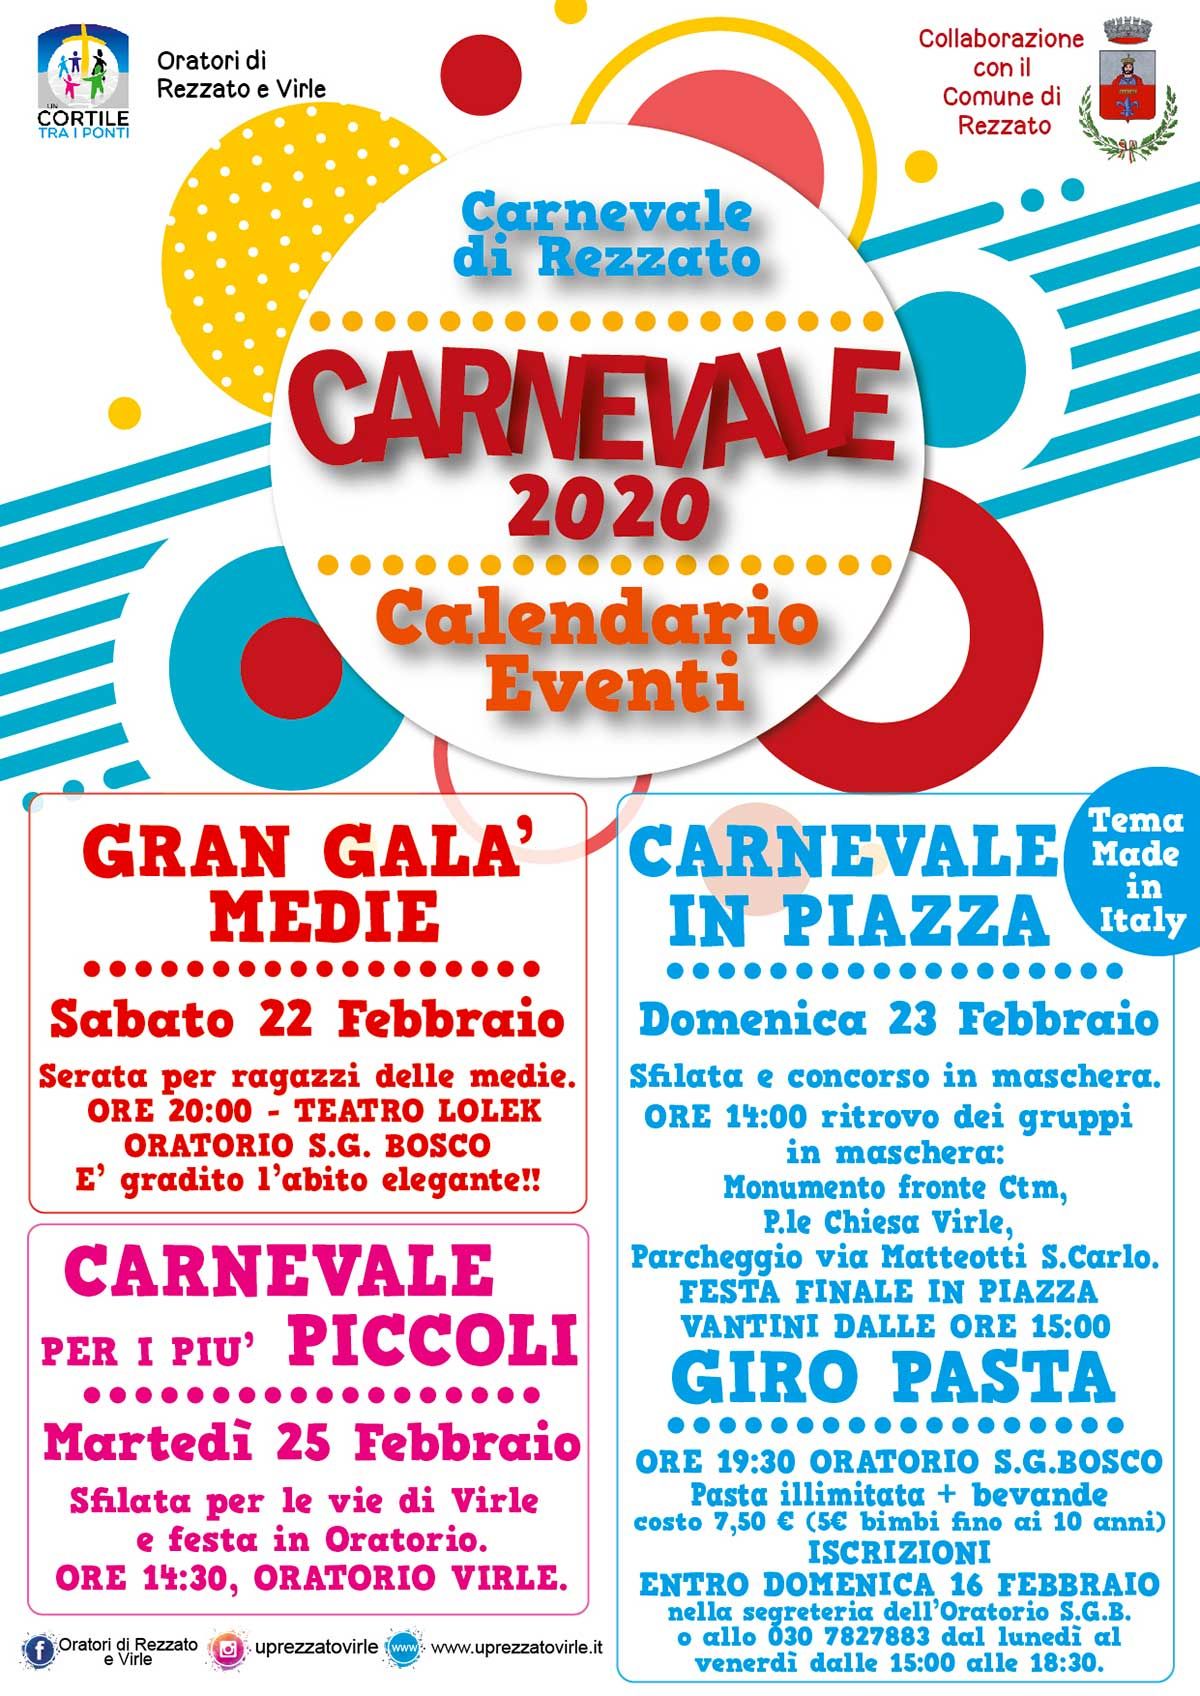 Carnevale-generale-rezzato-virle-2020